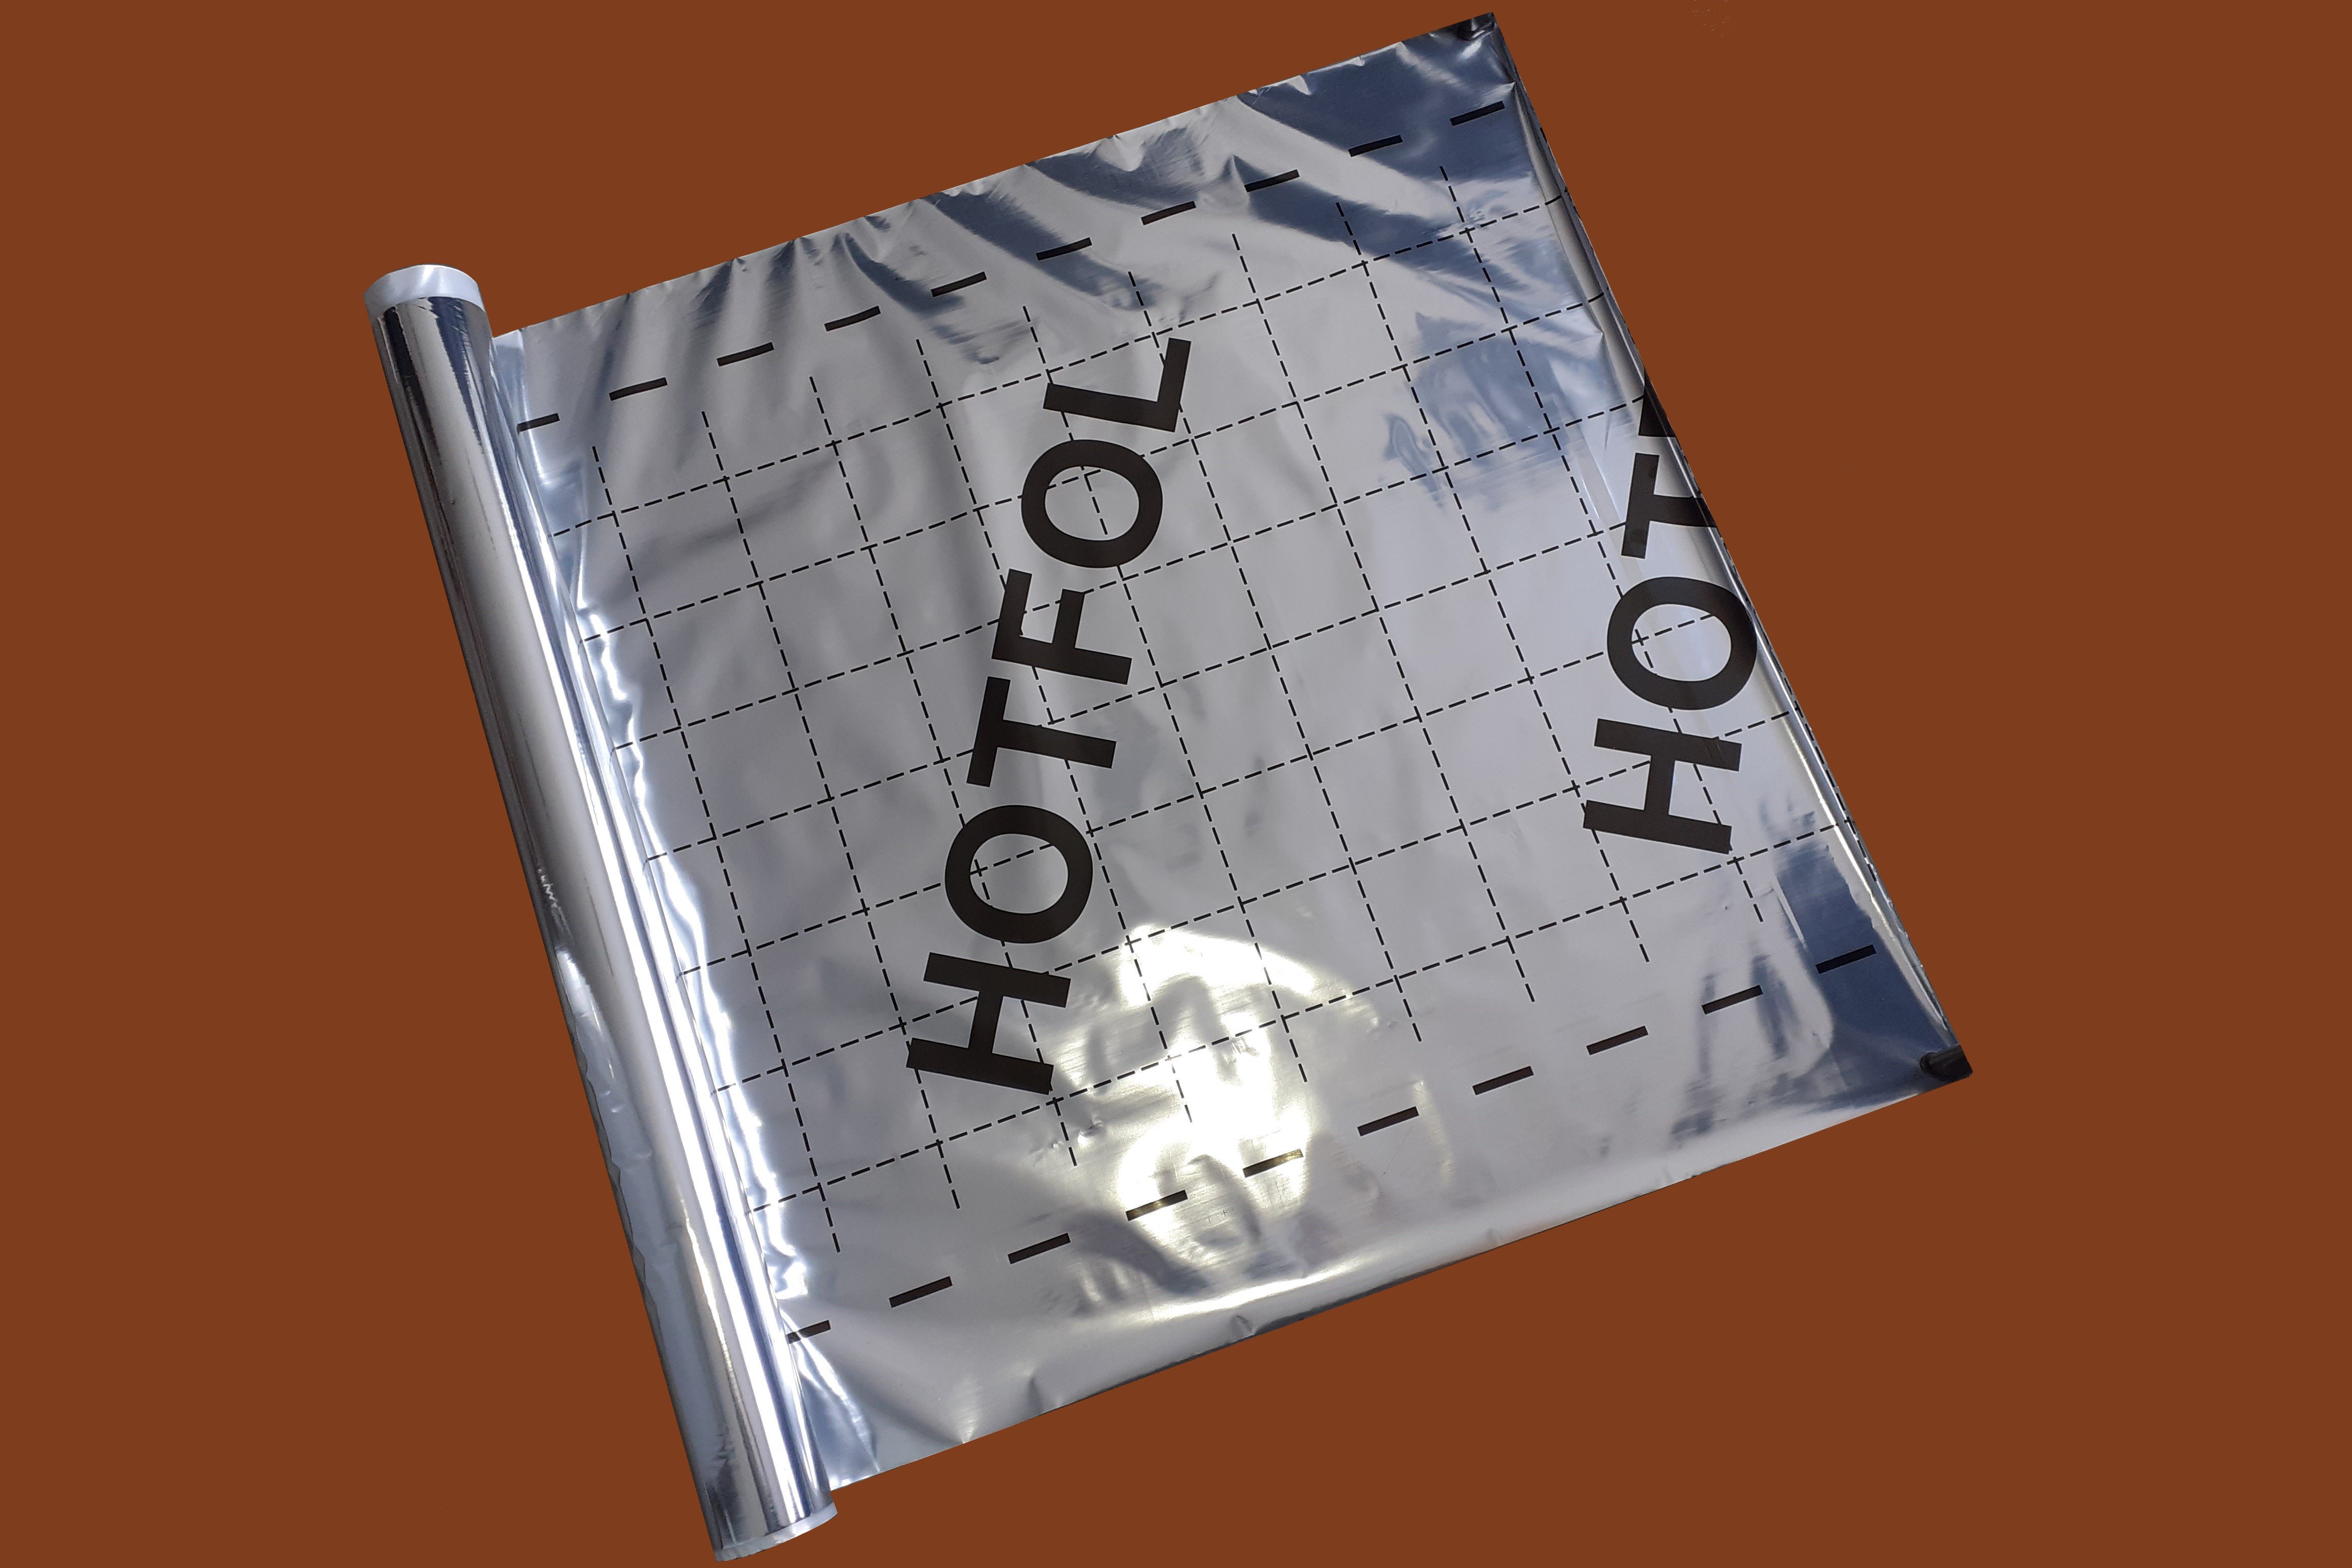 Fólia Hotfol padlófűtés alátétfólia (50m2) BAUplaza Kft.